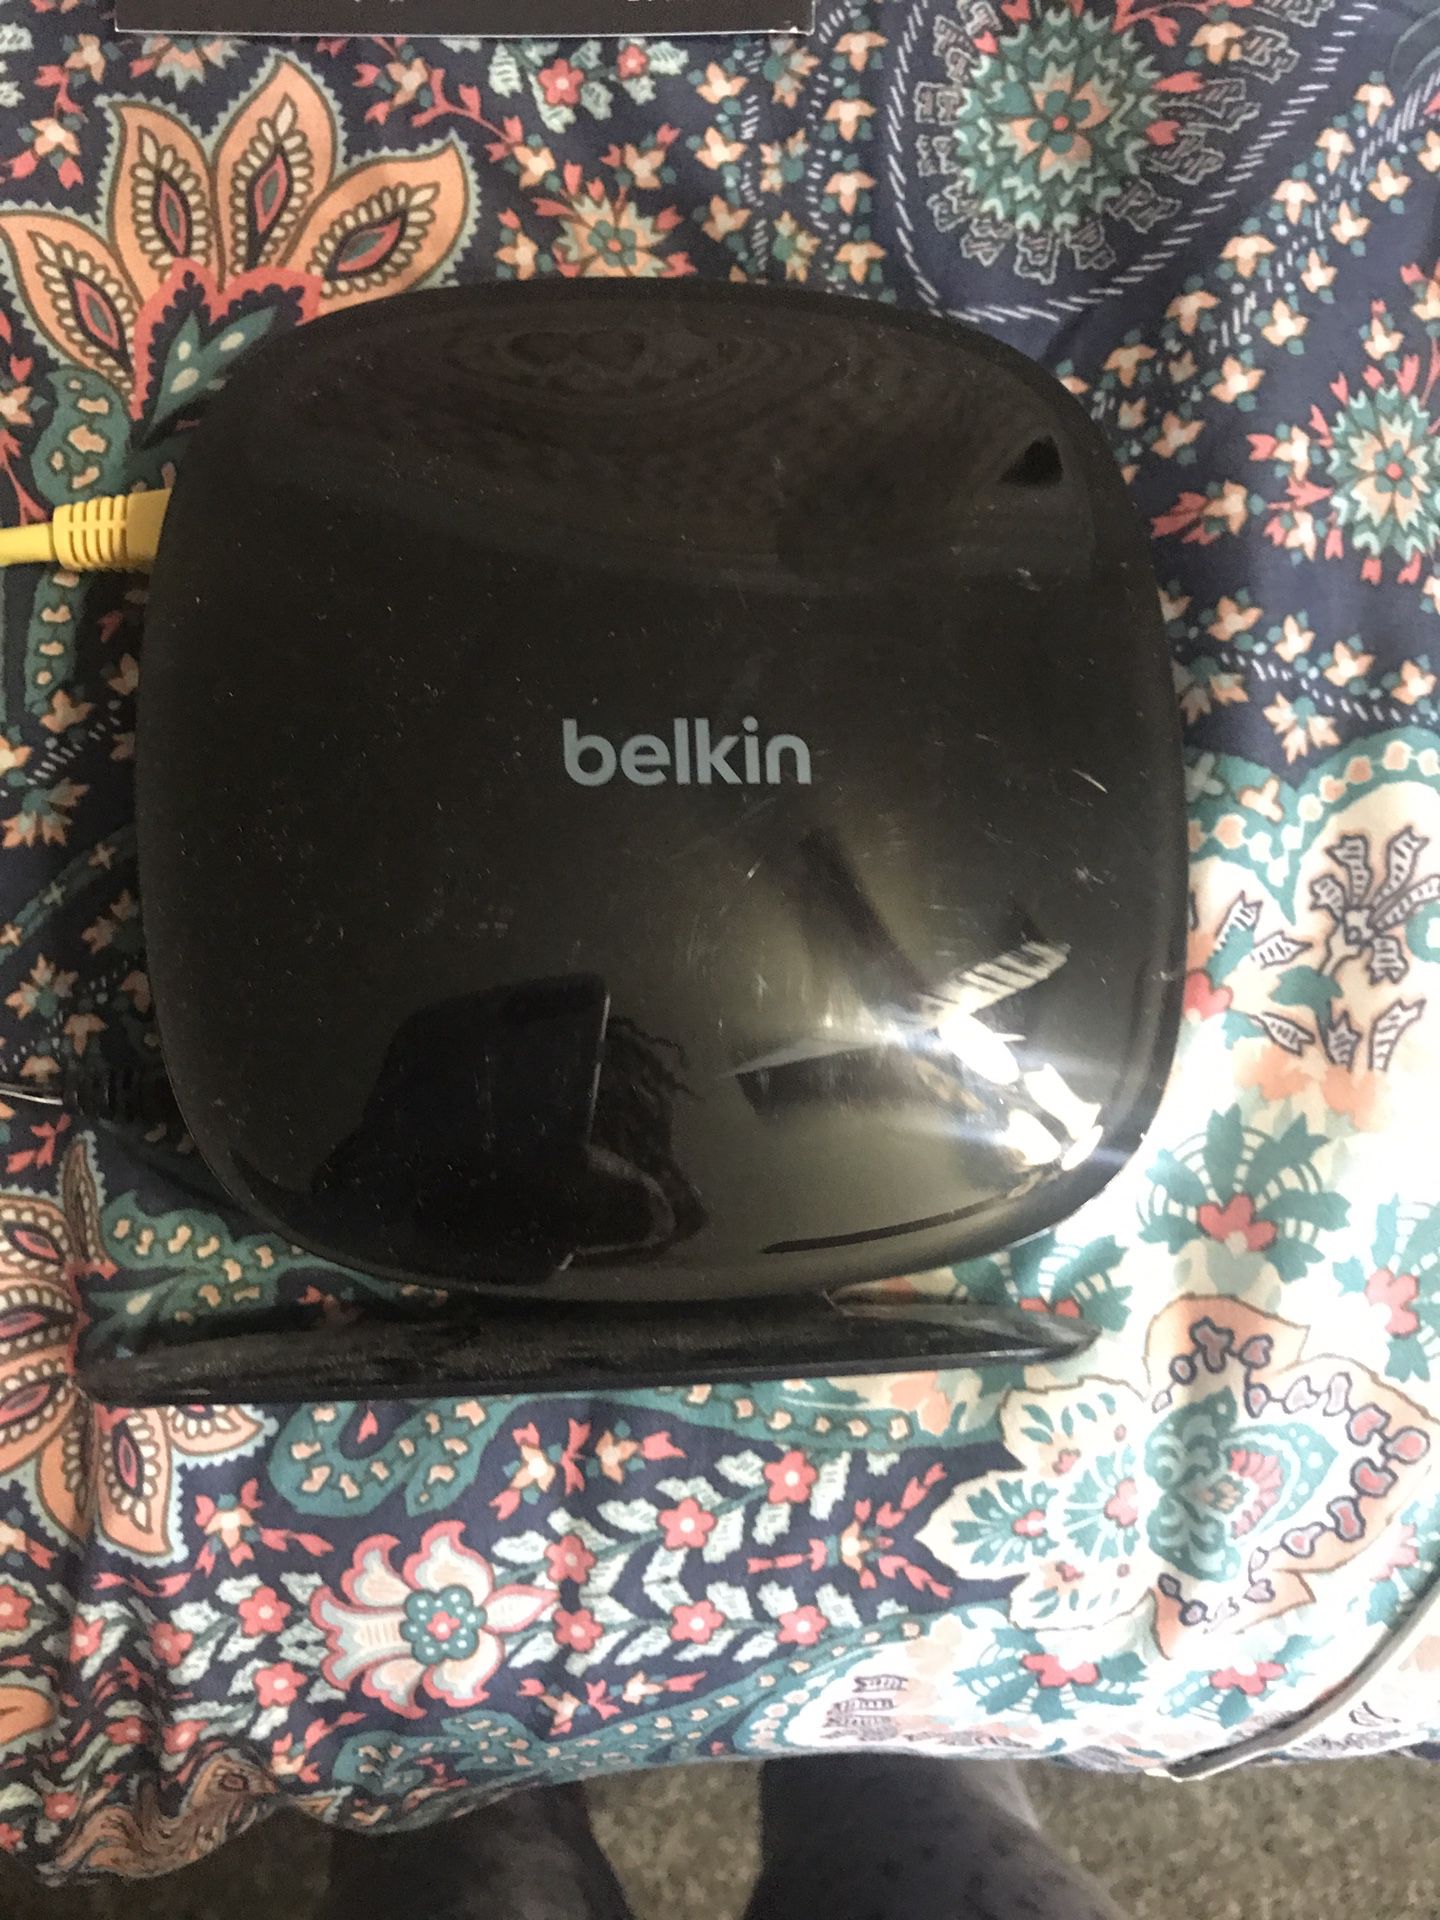 Belkin N600 wireless router